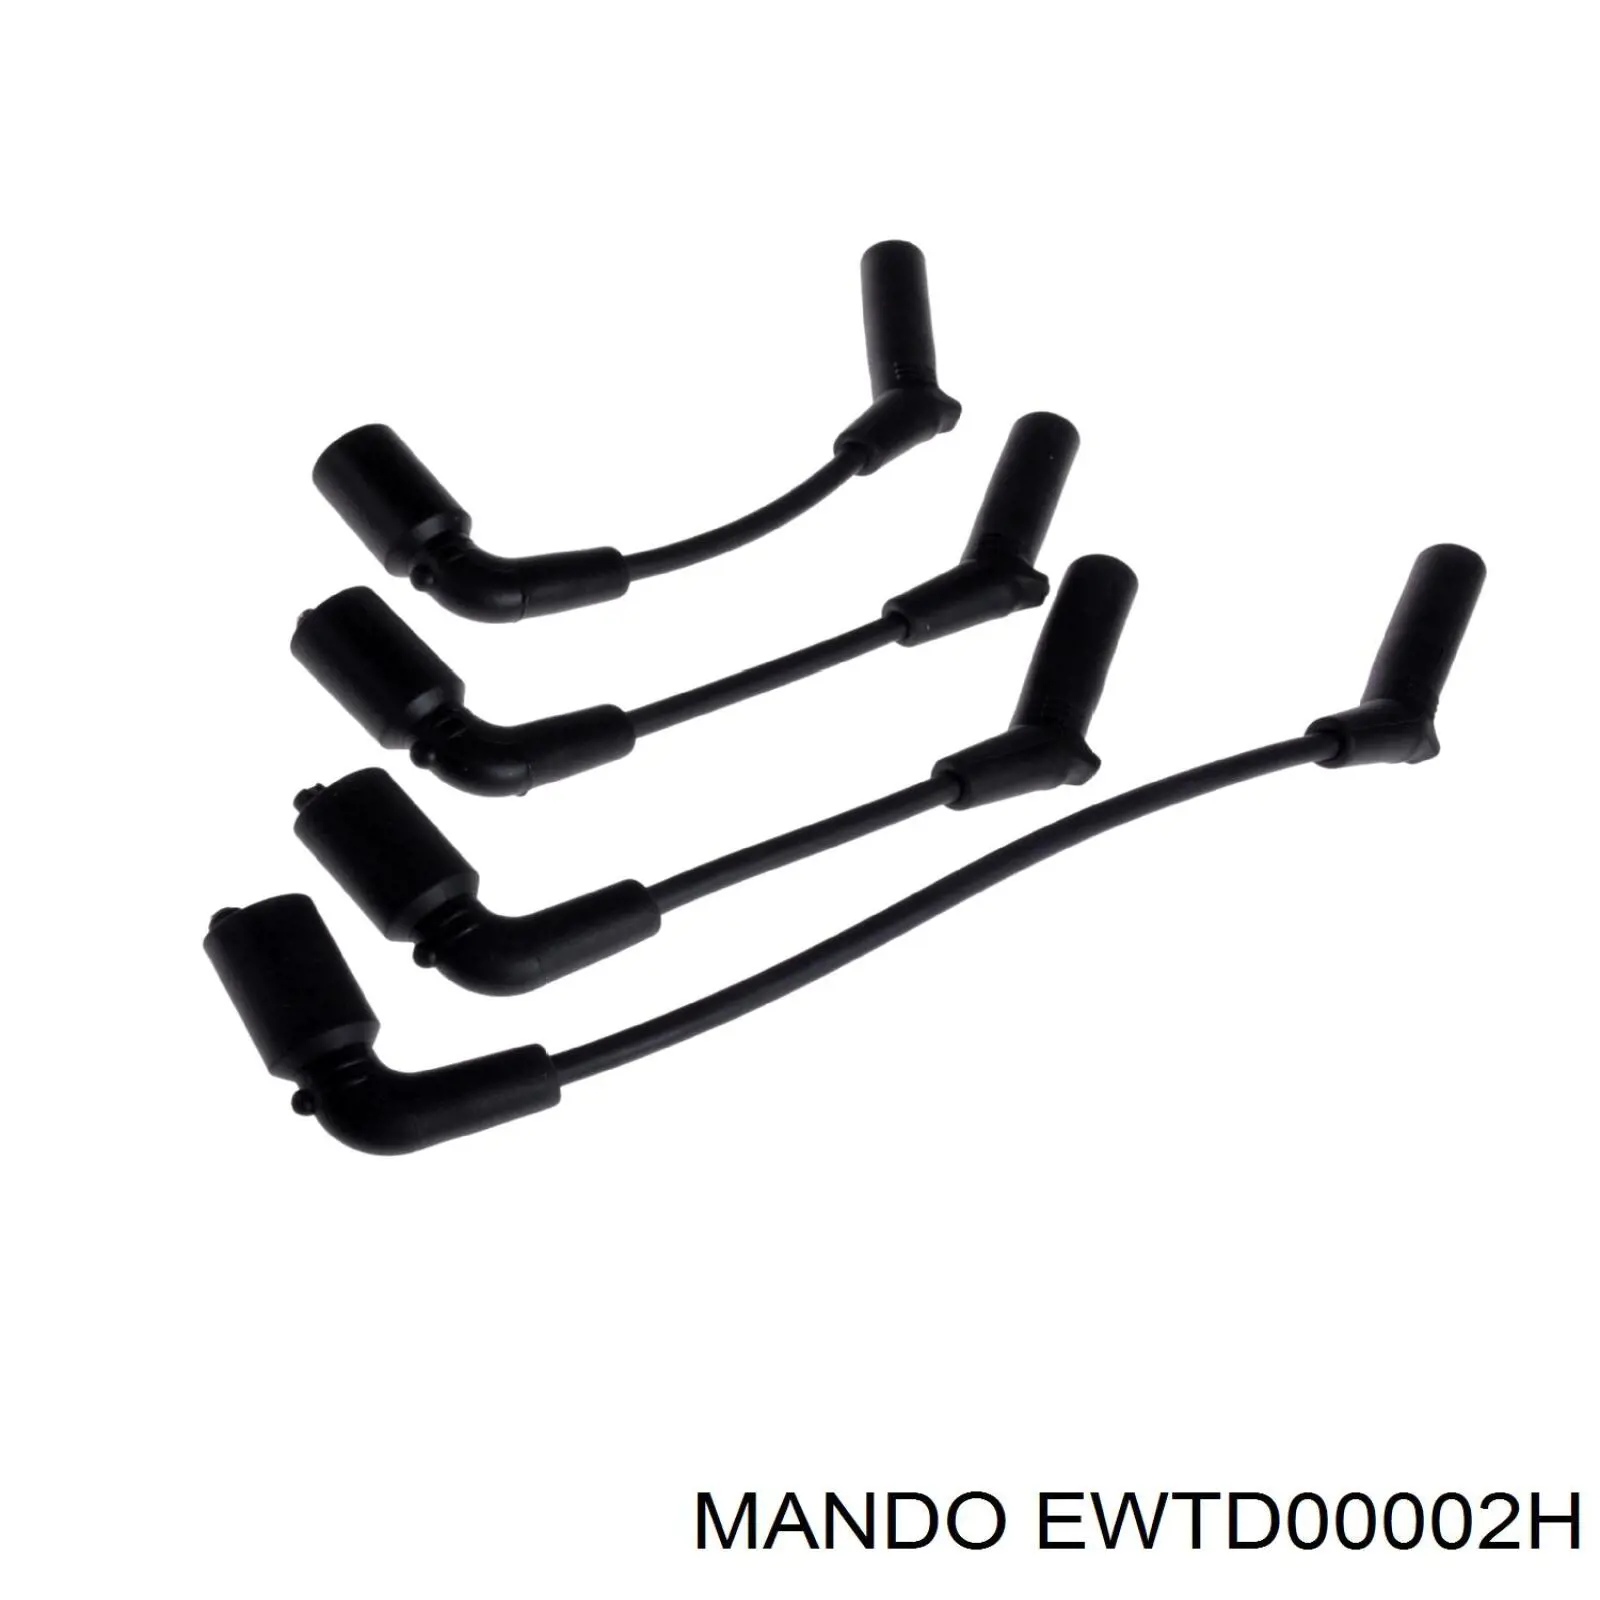 EWTD00002H Mando дріт високовольтні, комплект